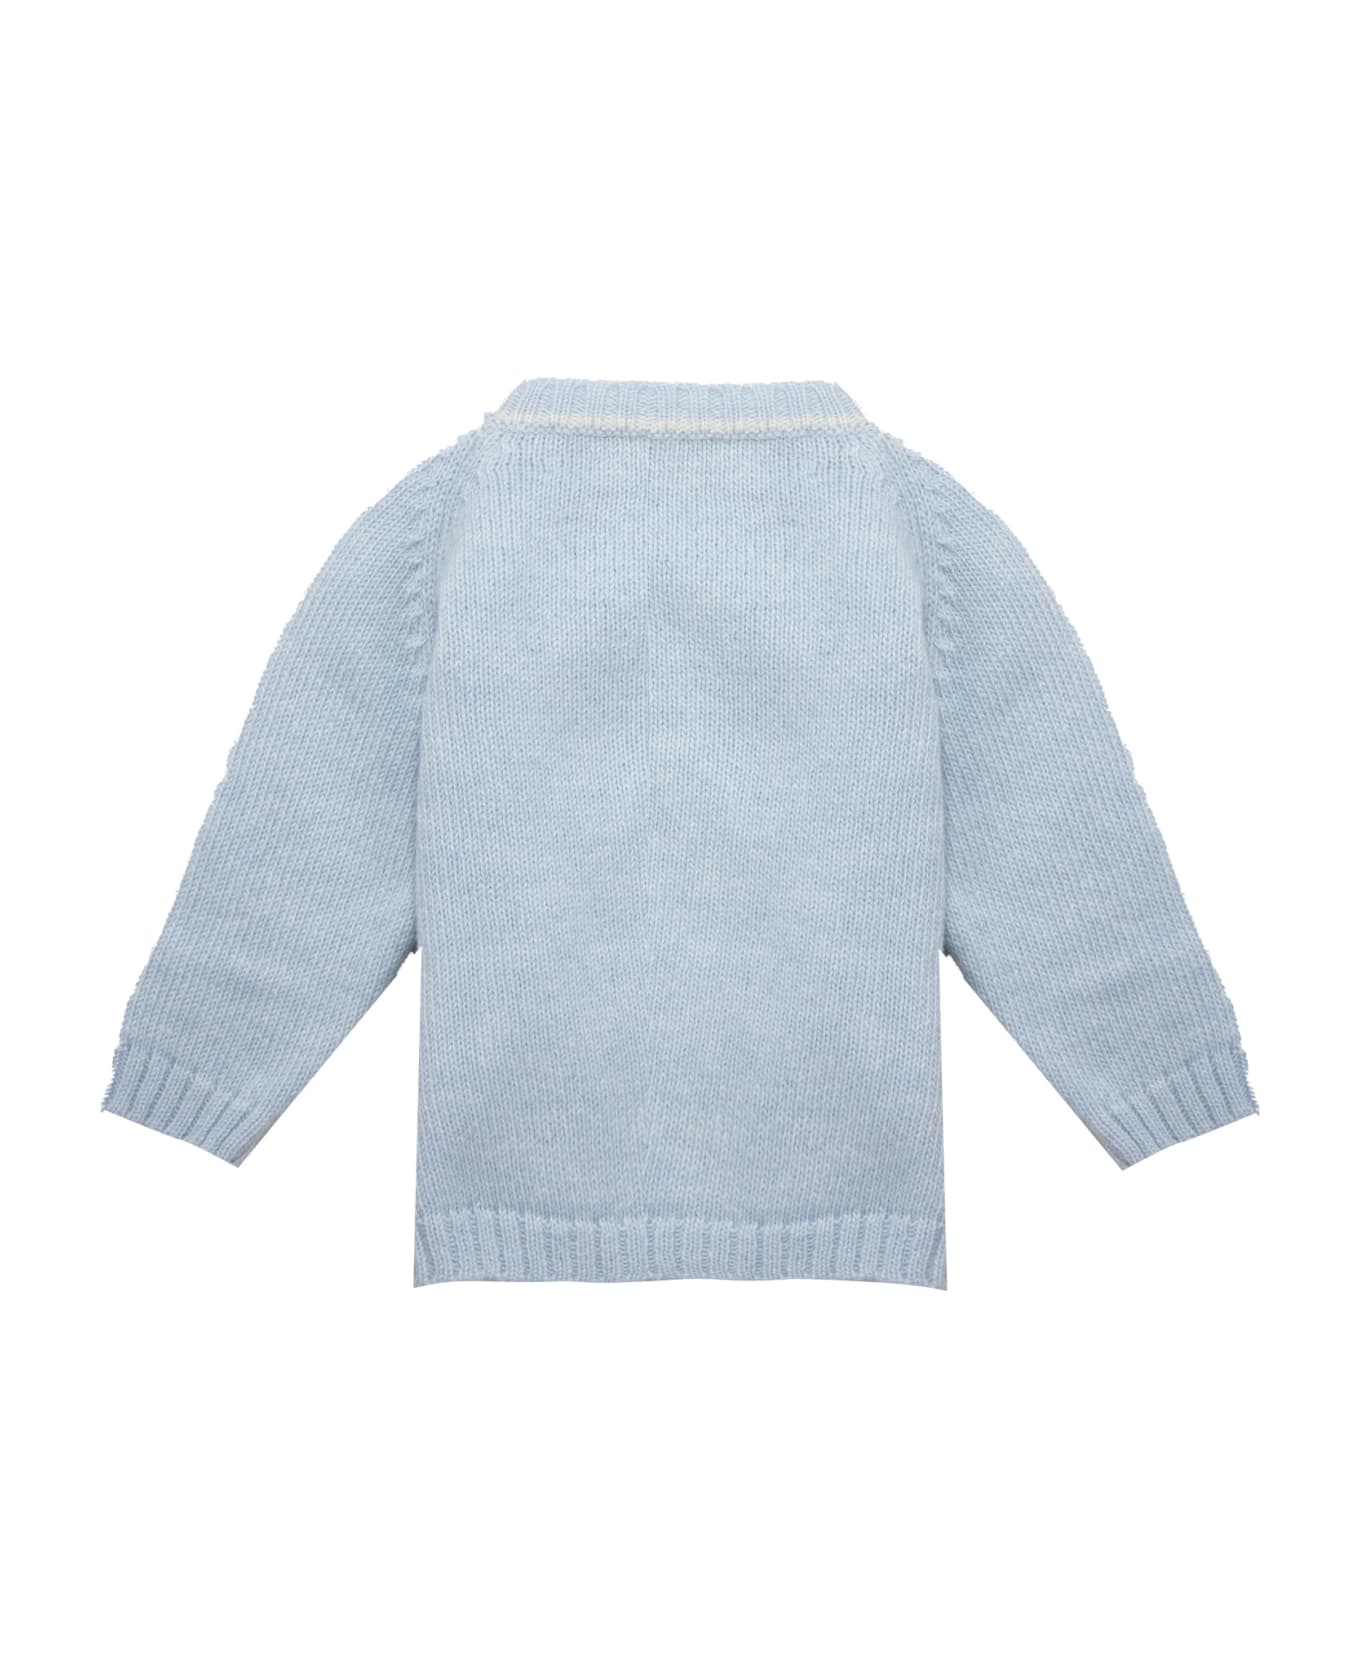 La stupenderia Wool Sweater - Light blue